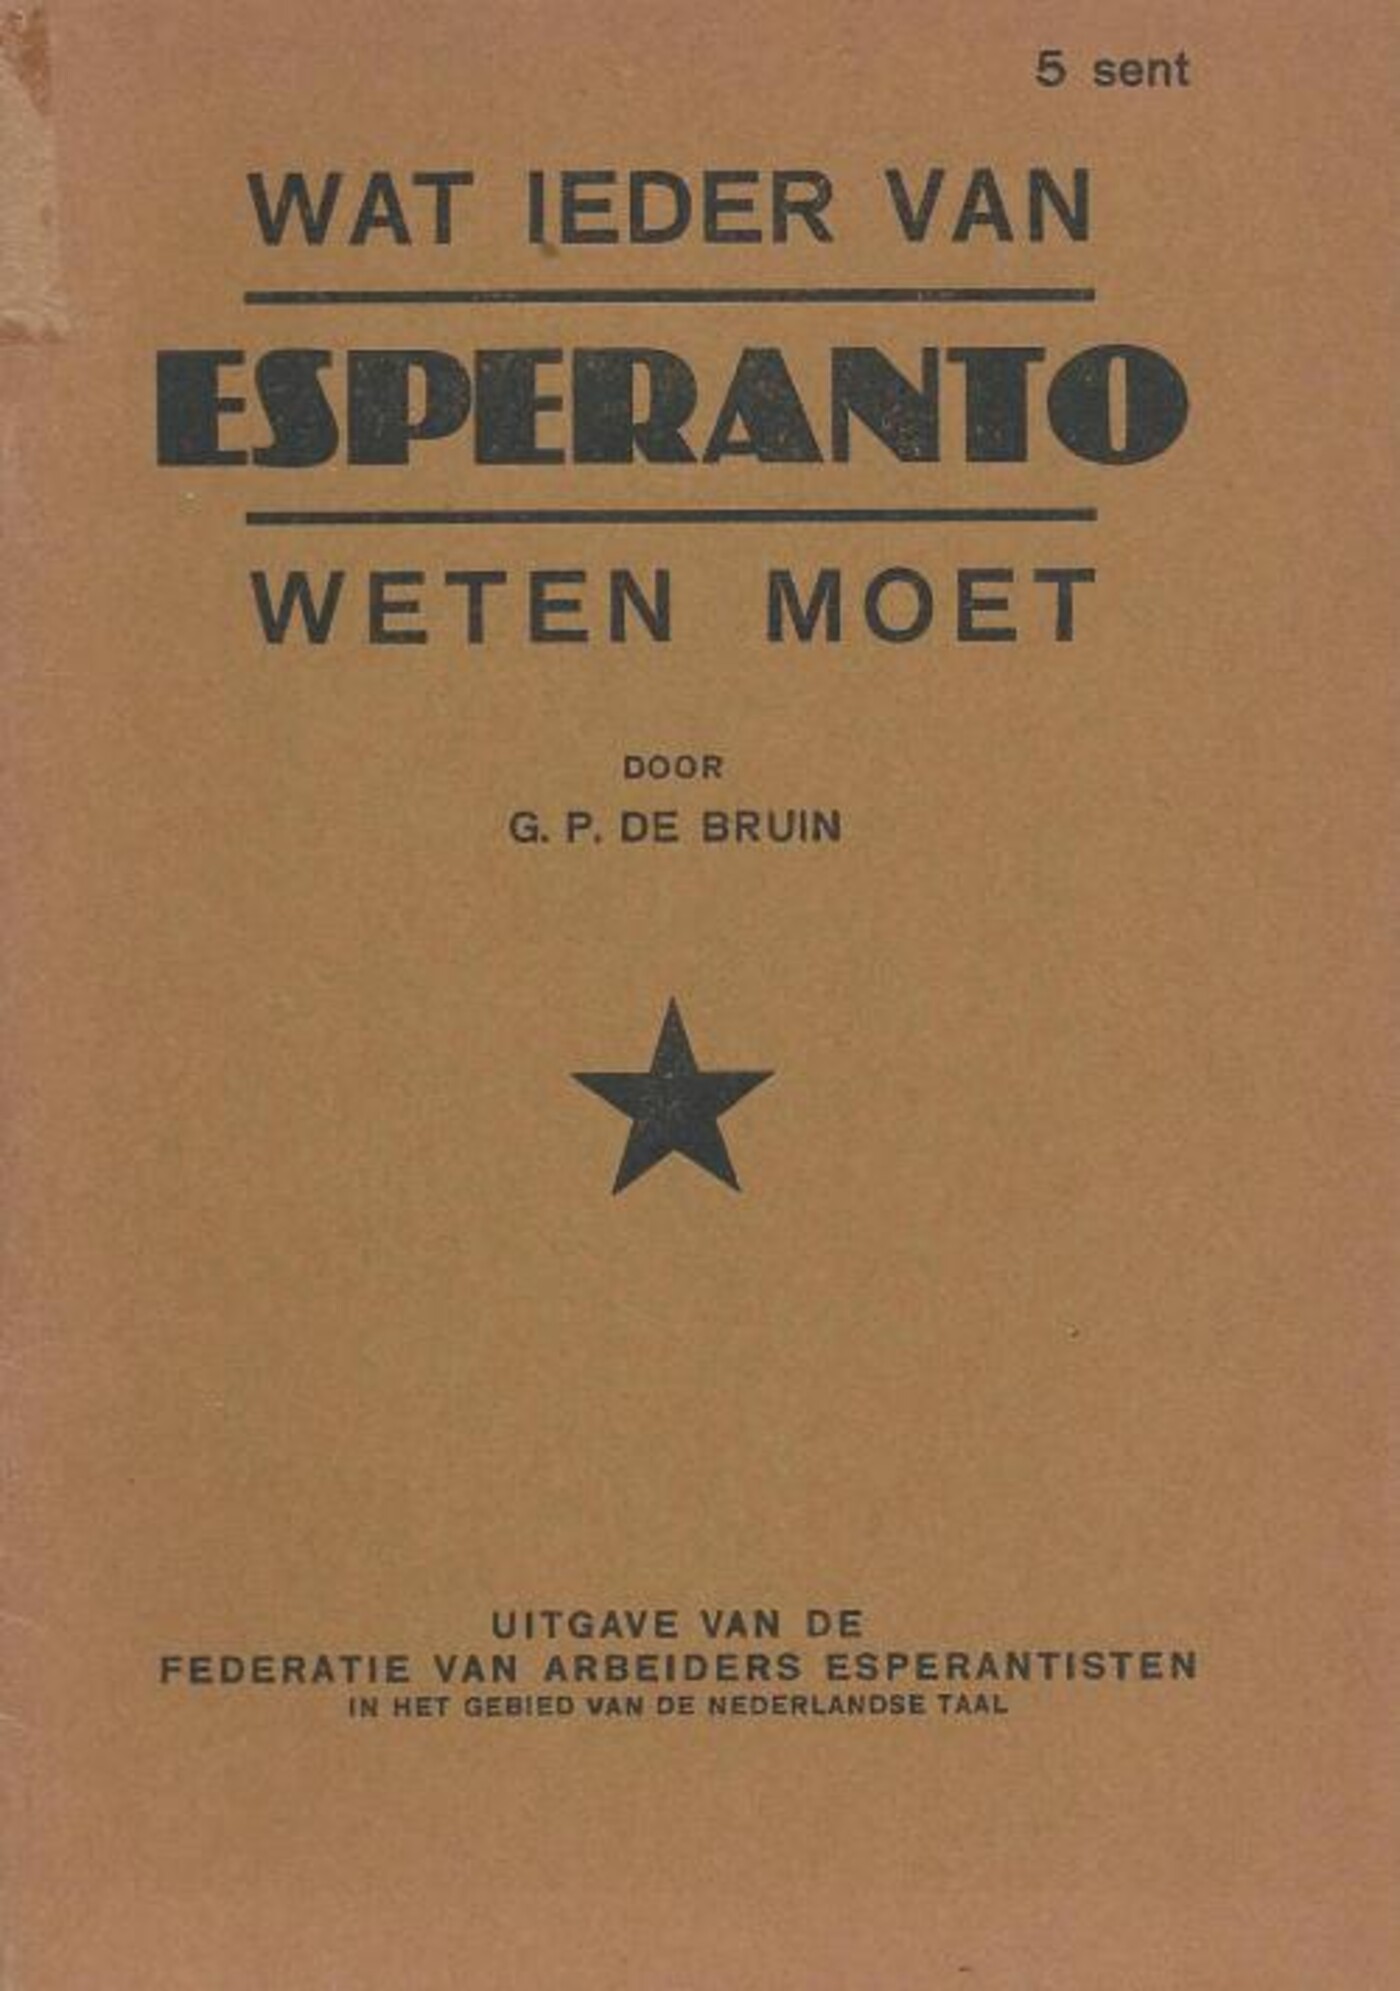 Wanhoop onder de Esperantisten?